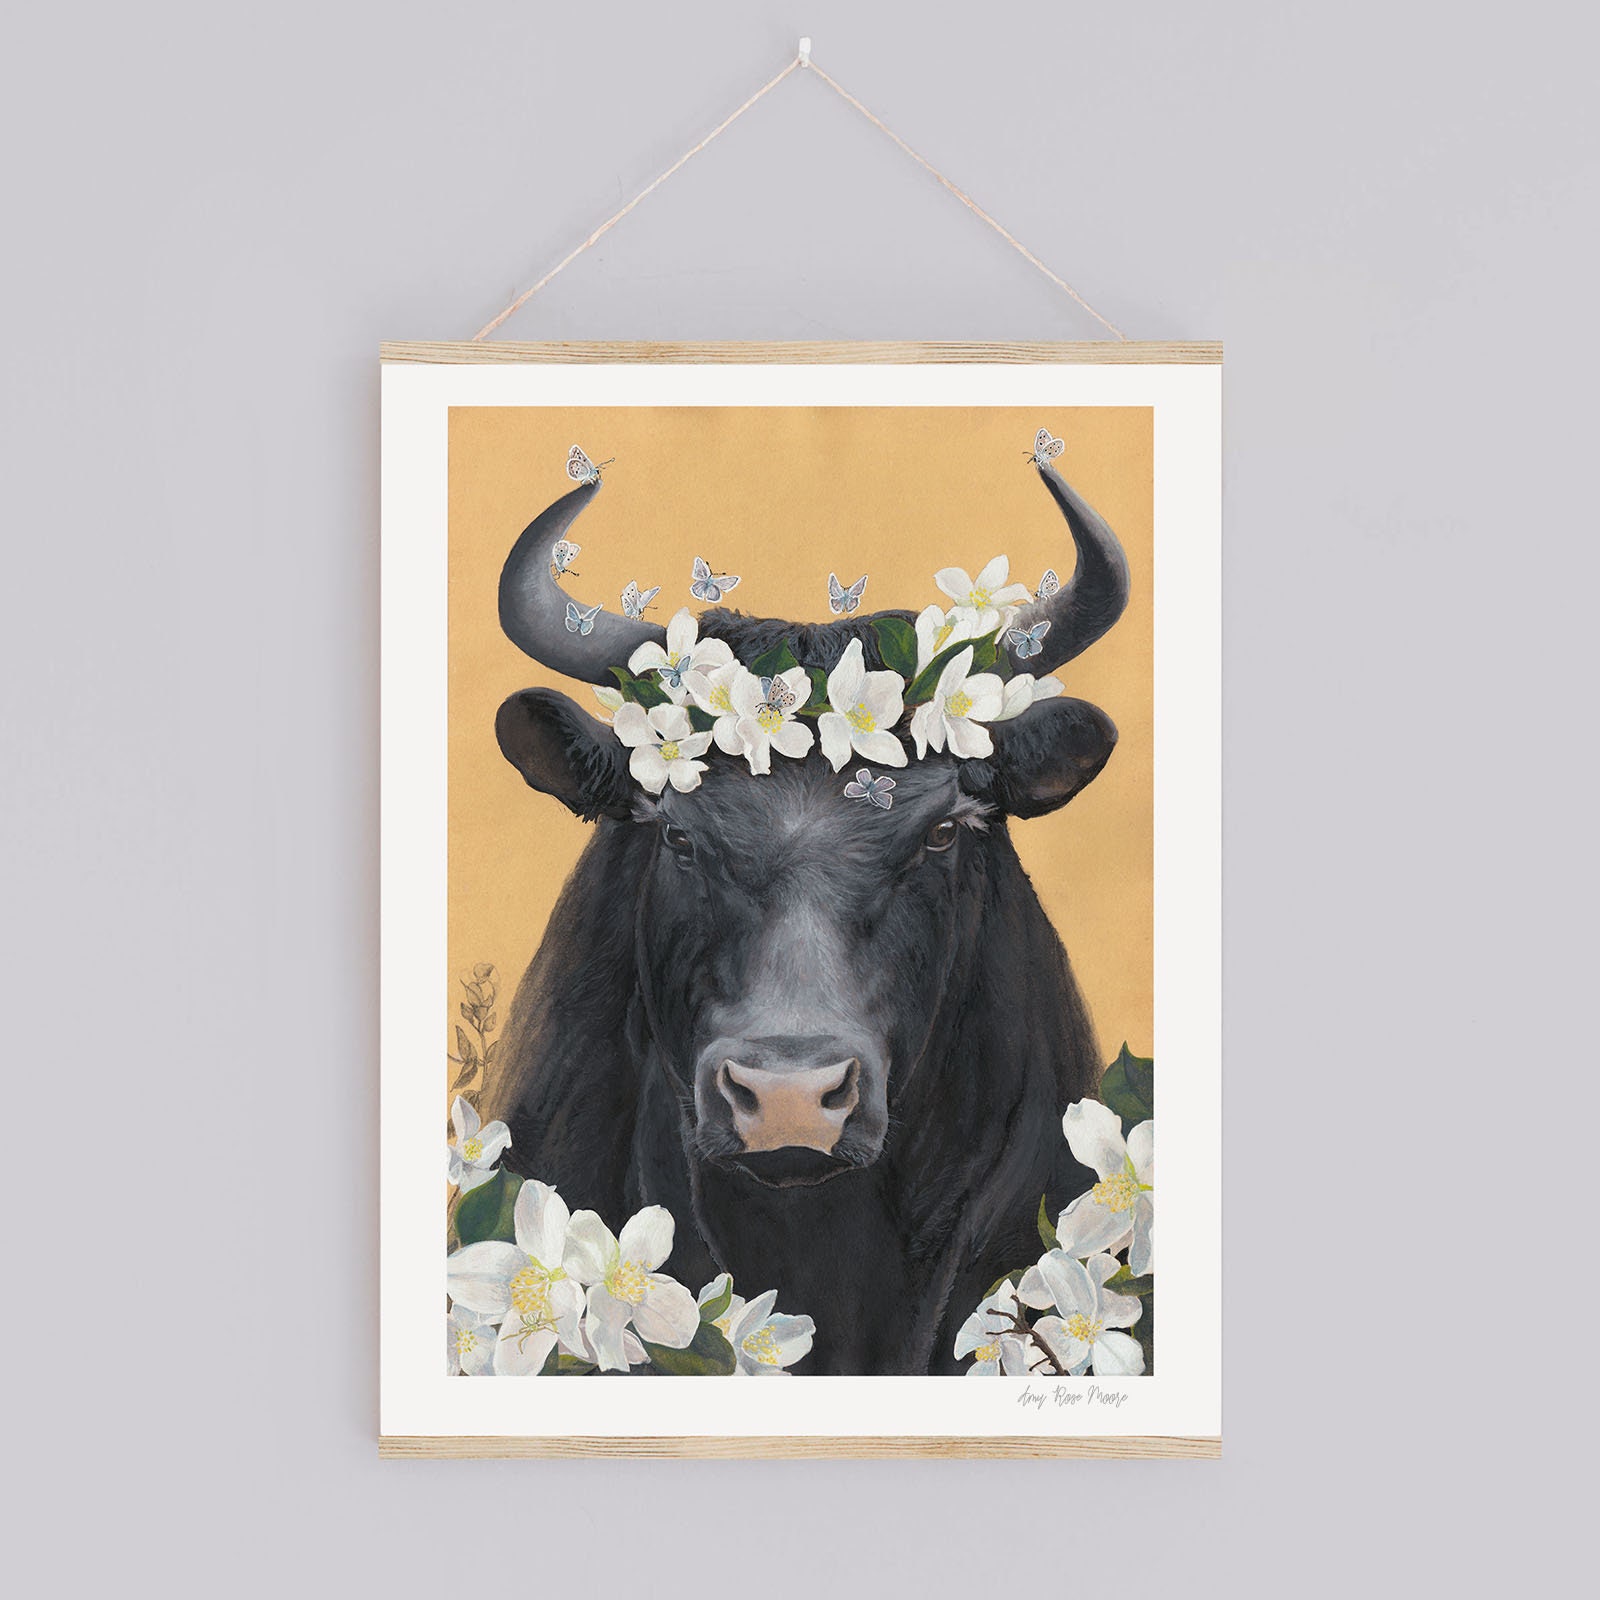 Ferdinand, el toro hippie que prefiere oler las flores